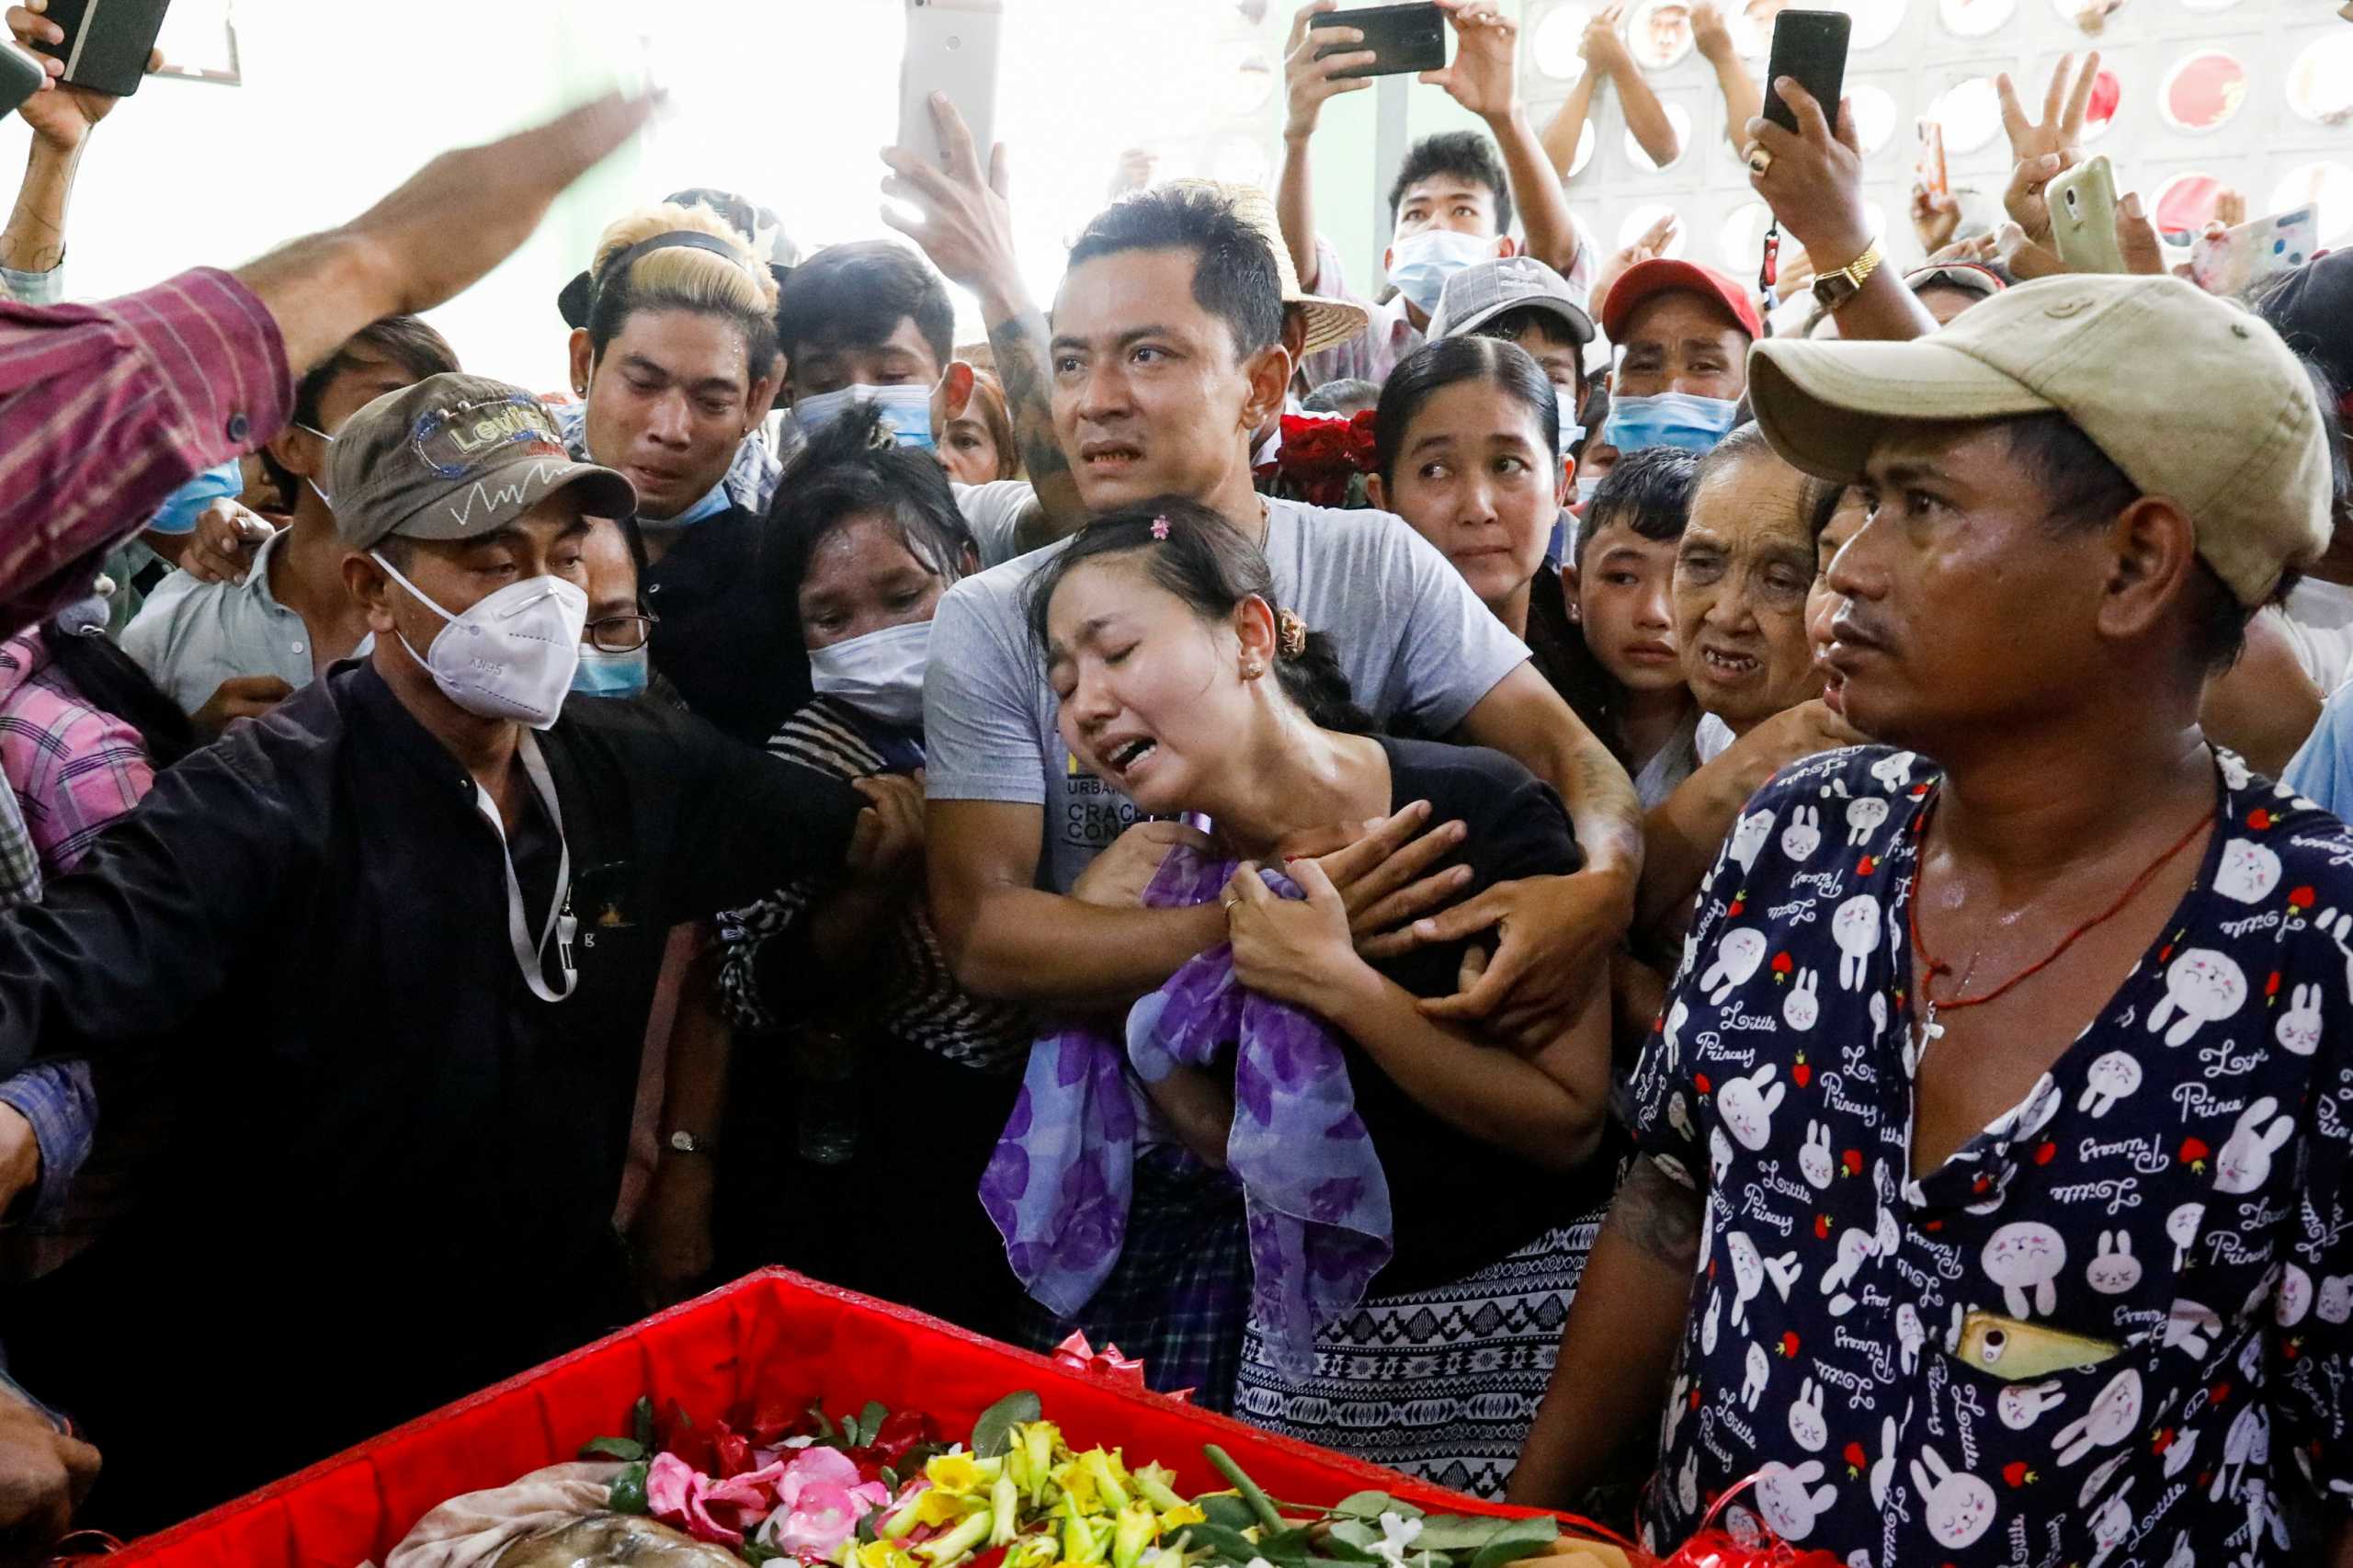 Μιανμάρ: Oκτώ νεκροί στις διαδηλώσεις κατά του πραξικοπήματος – Η χούντα κατηγορείται για δωροληψία